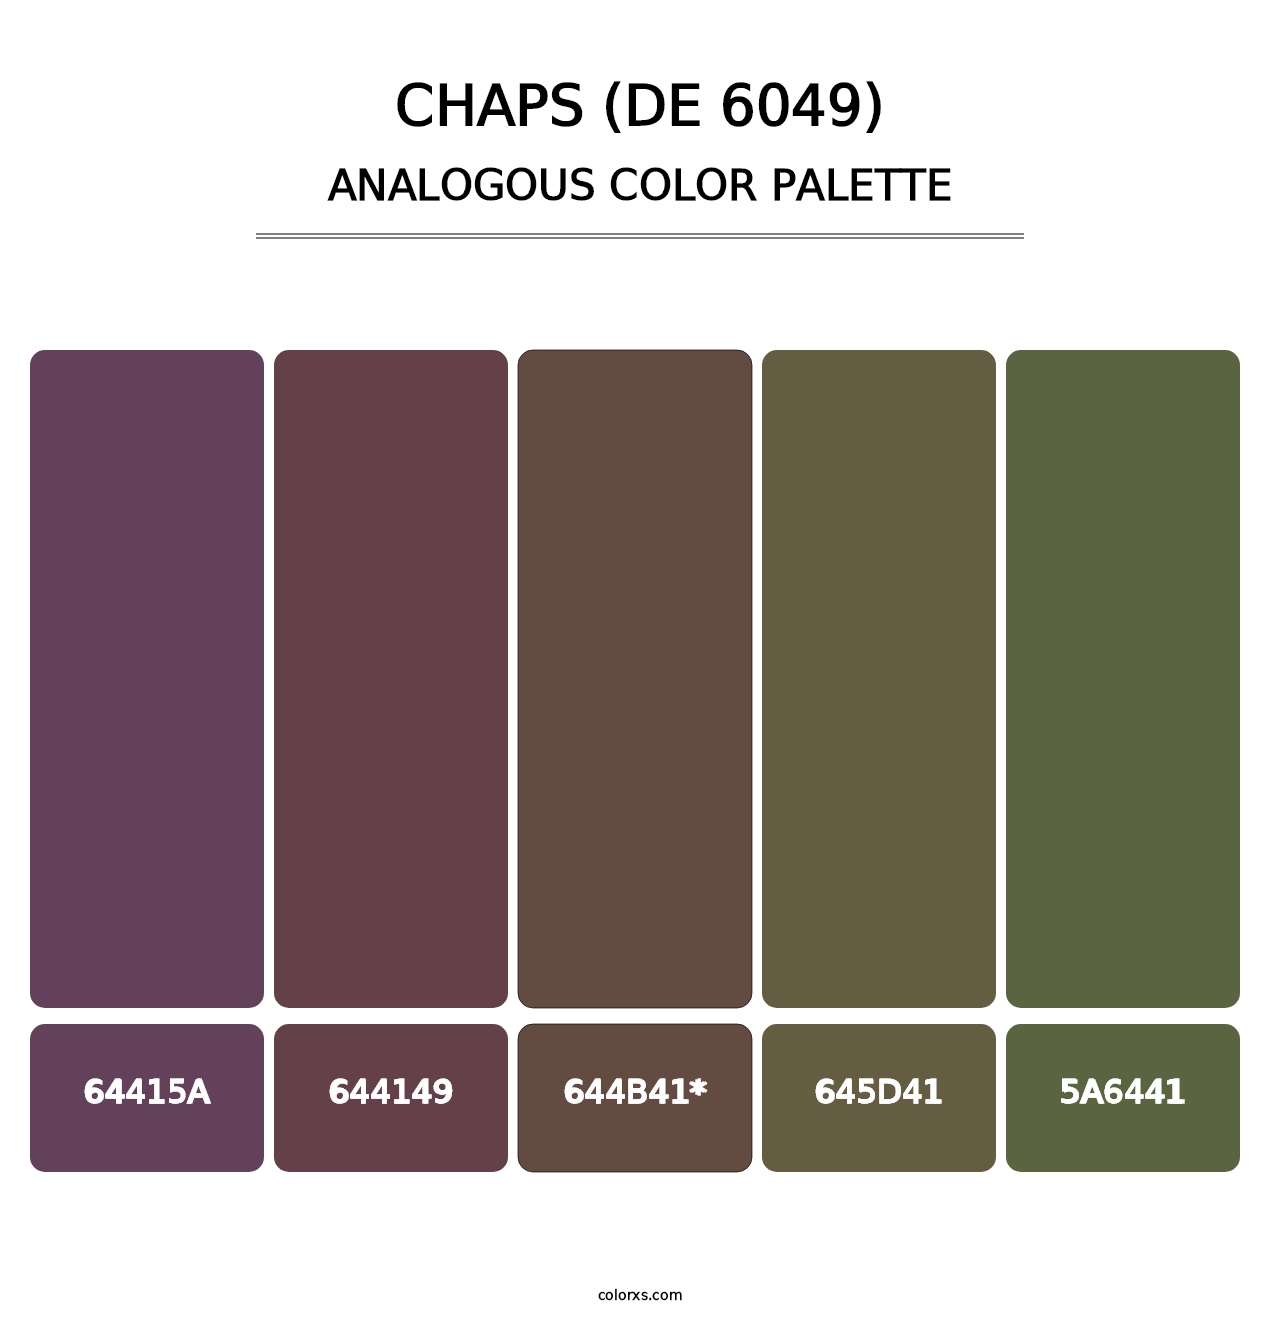 Chaps (DE 6049) - Analogous Color Palette